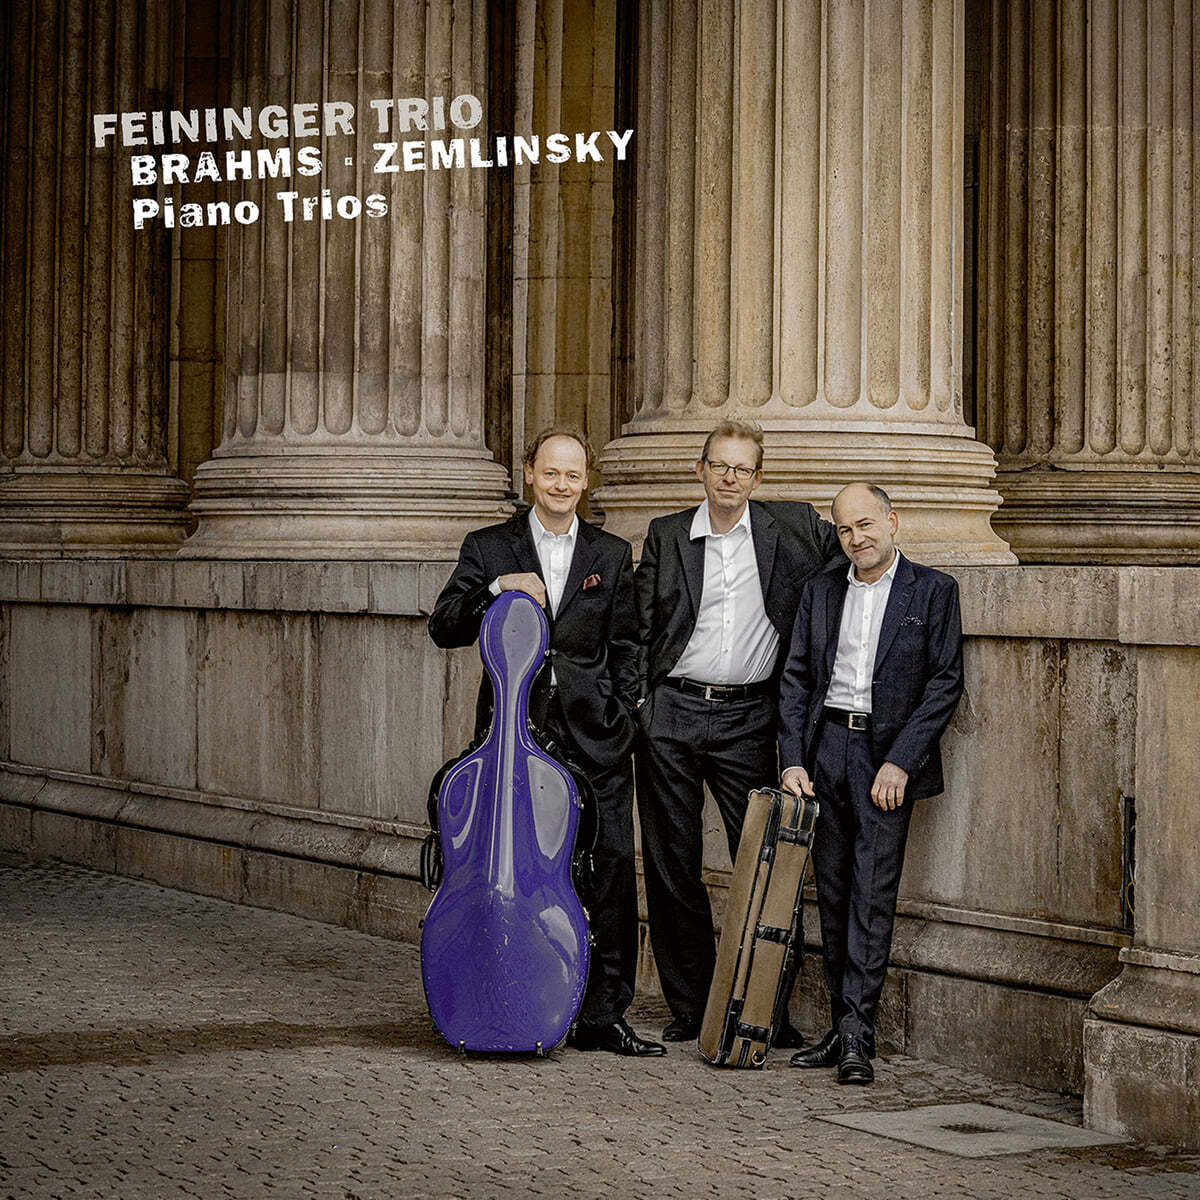 Feininger Trio 브람스 / 쳄린스키: 피아노 삼중주 (Brahms: Piano Trio Op.101 / Zemlinsky: Piano Trio Op.3) 